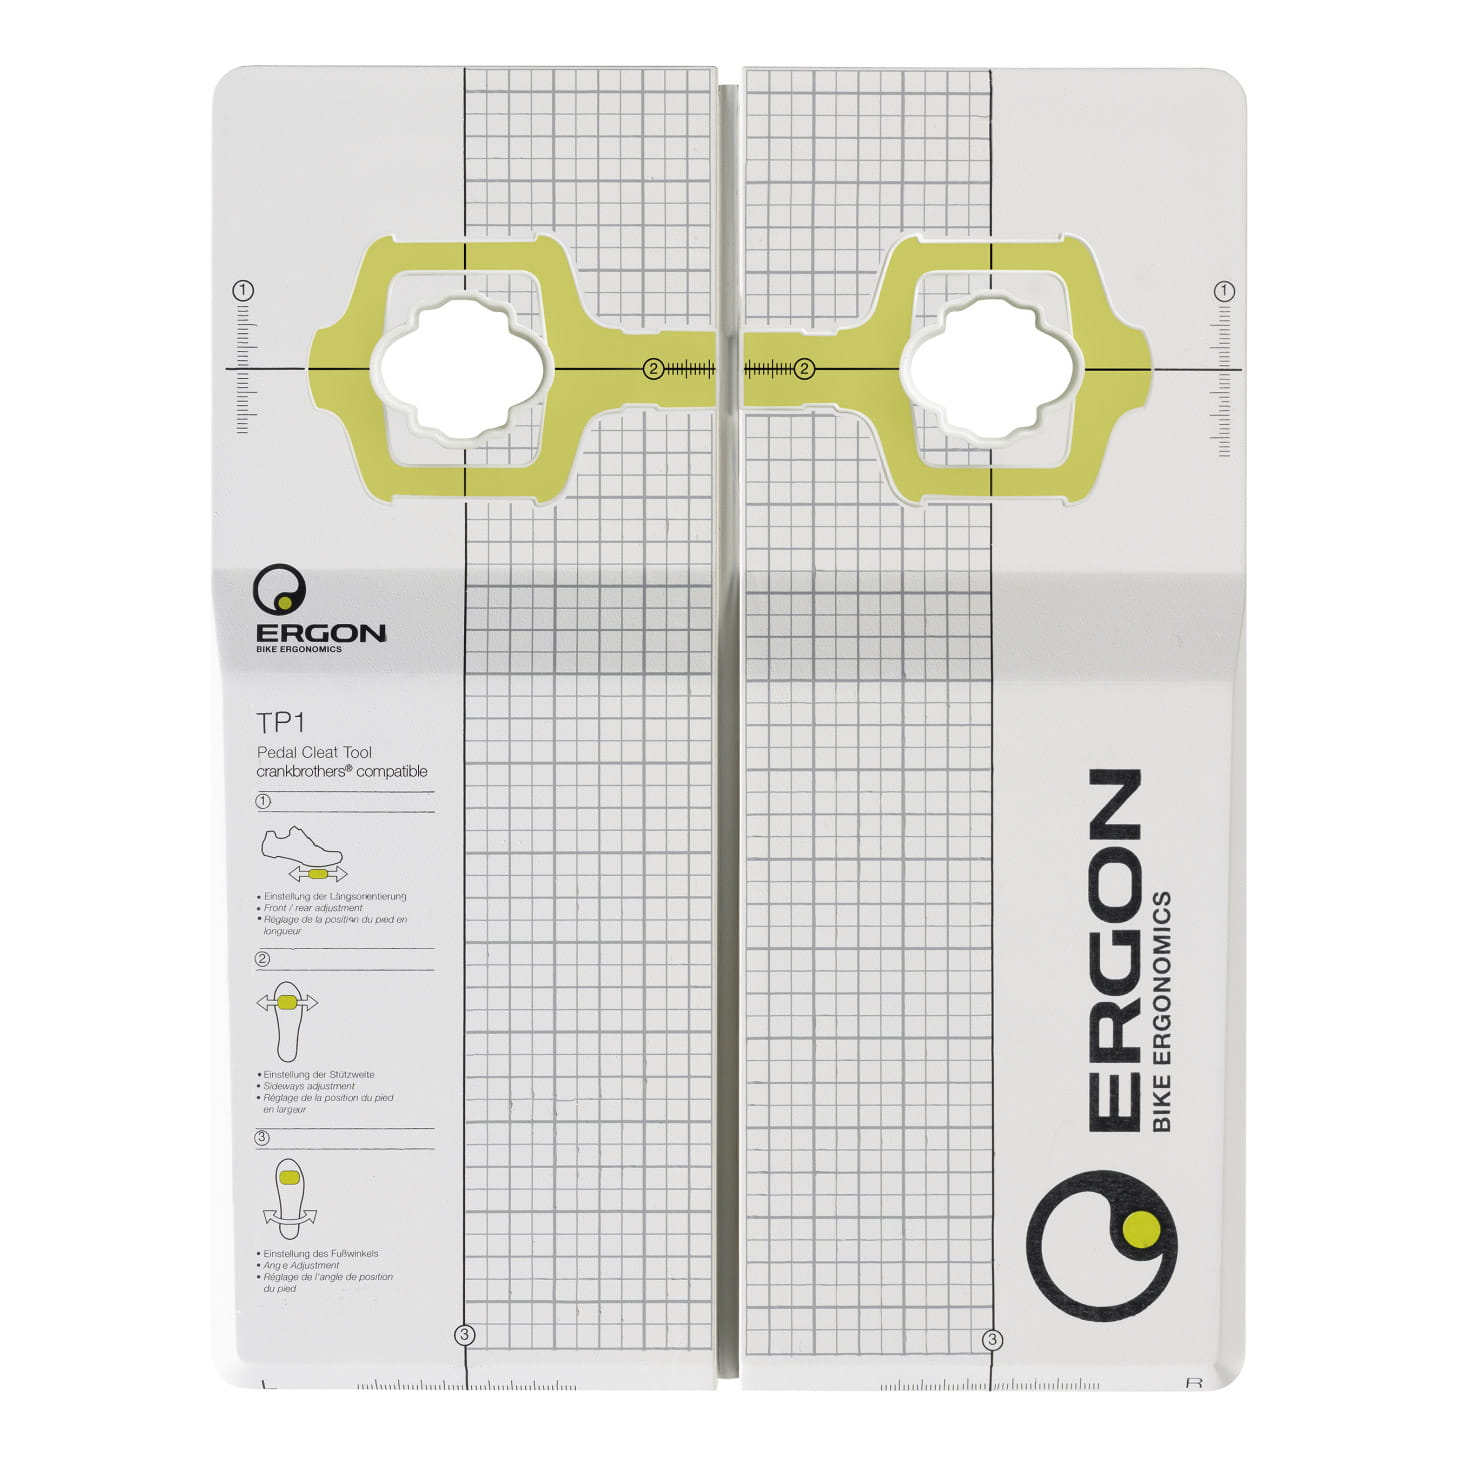 Ergon TP1 Pedal Cleat Tool Einstellwerkzeug für Klickpedale / Schuhplatten